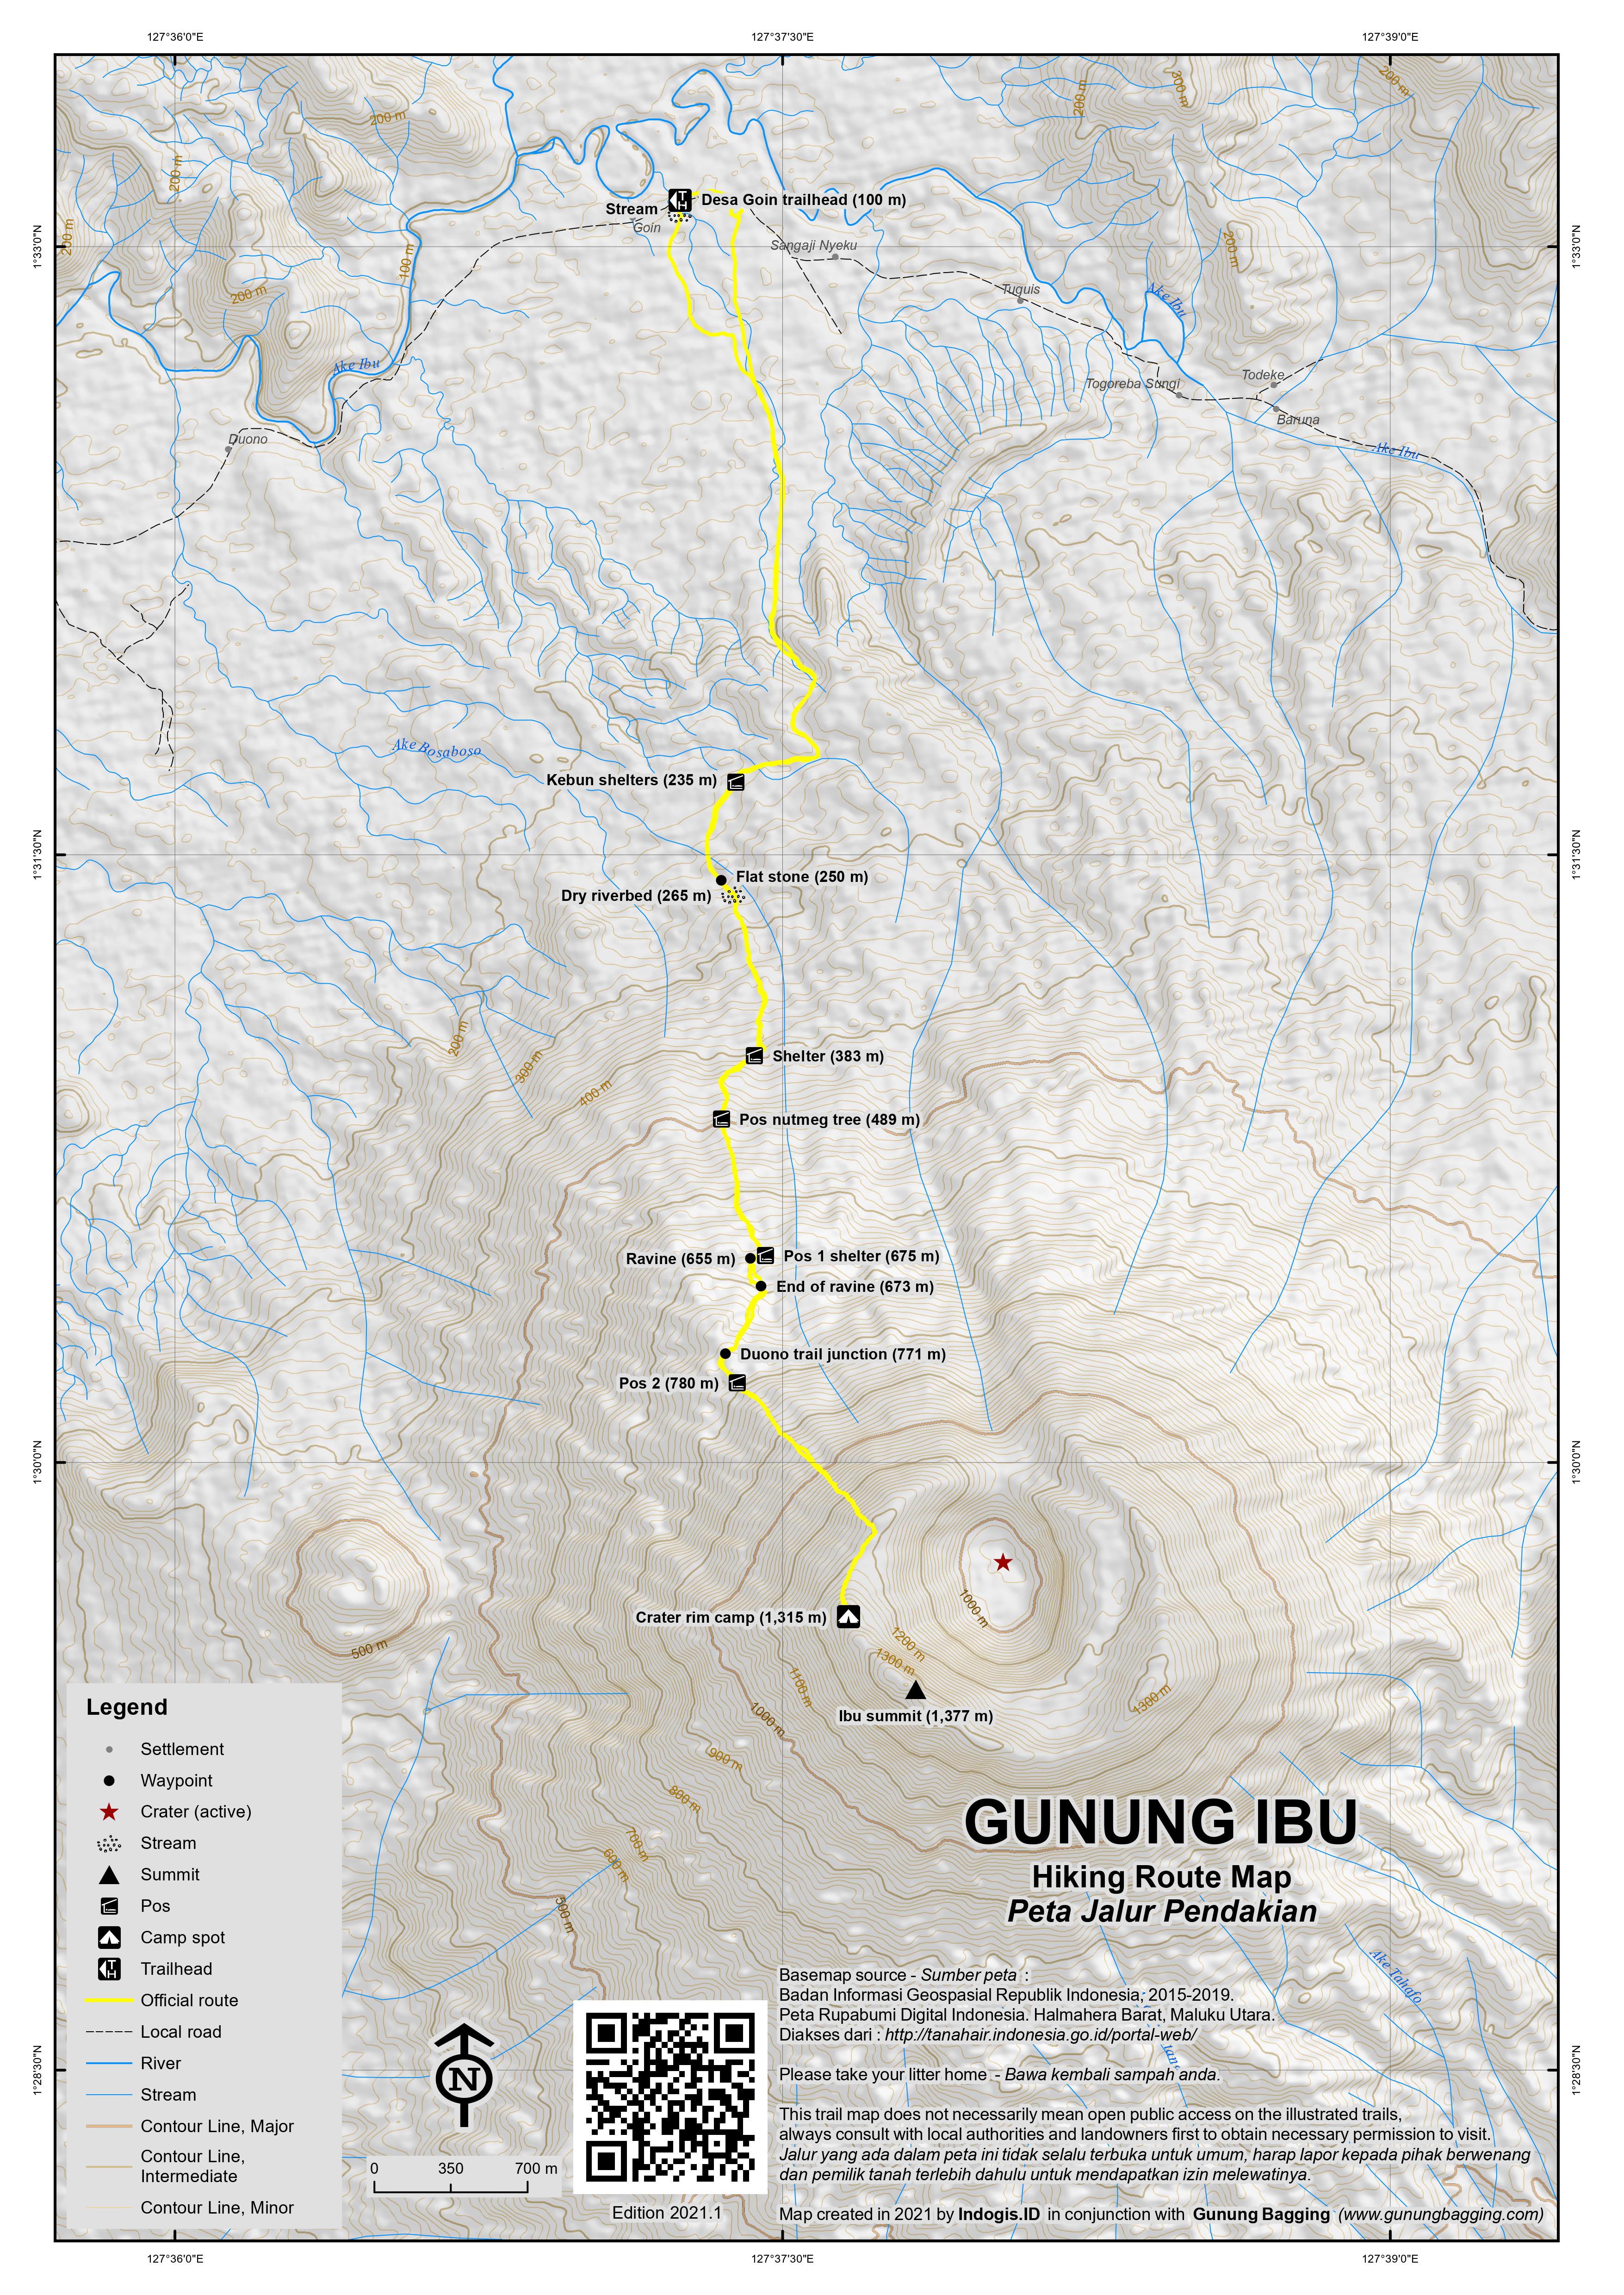 Peta Jalur Pendakian Gunung Ibu